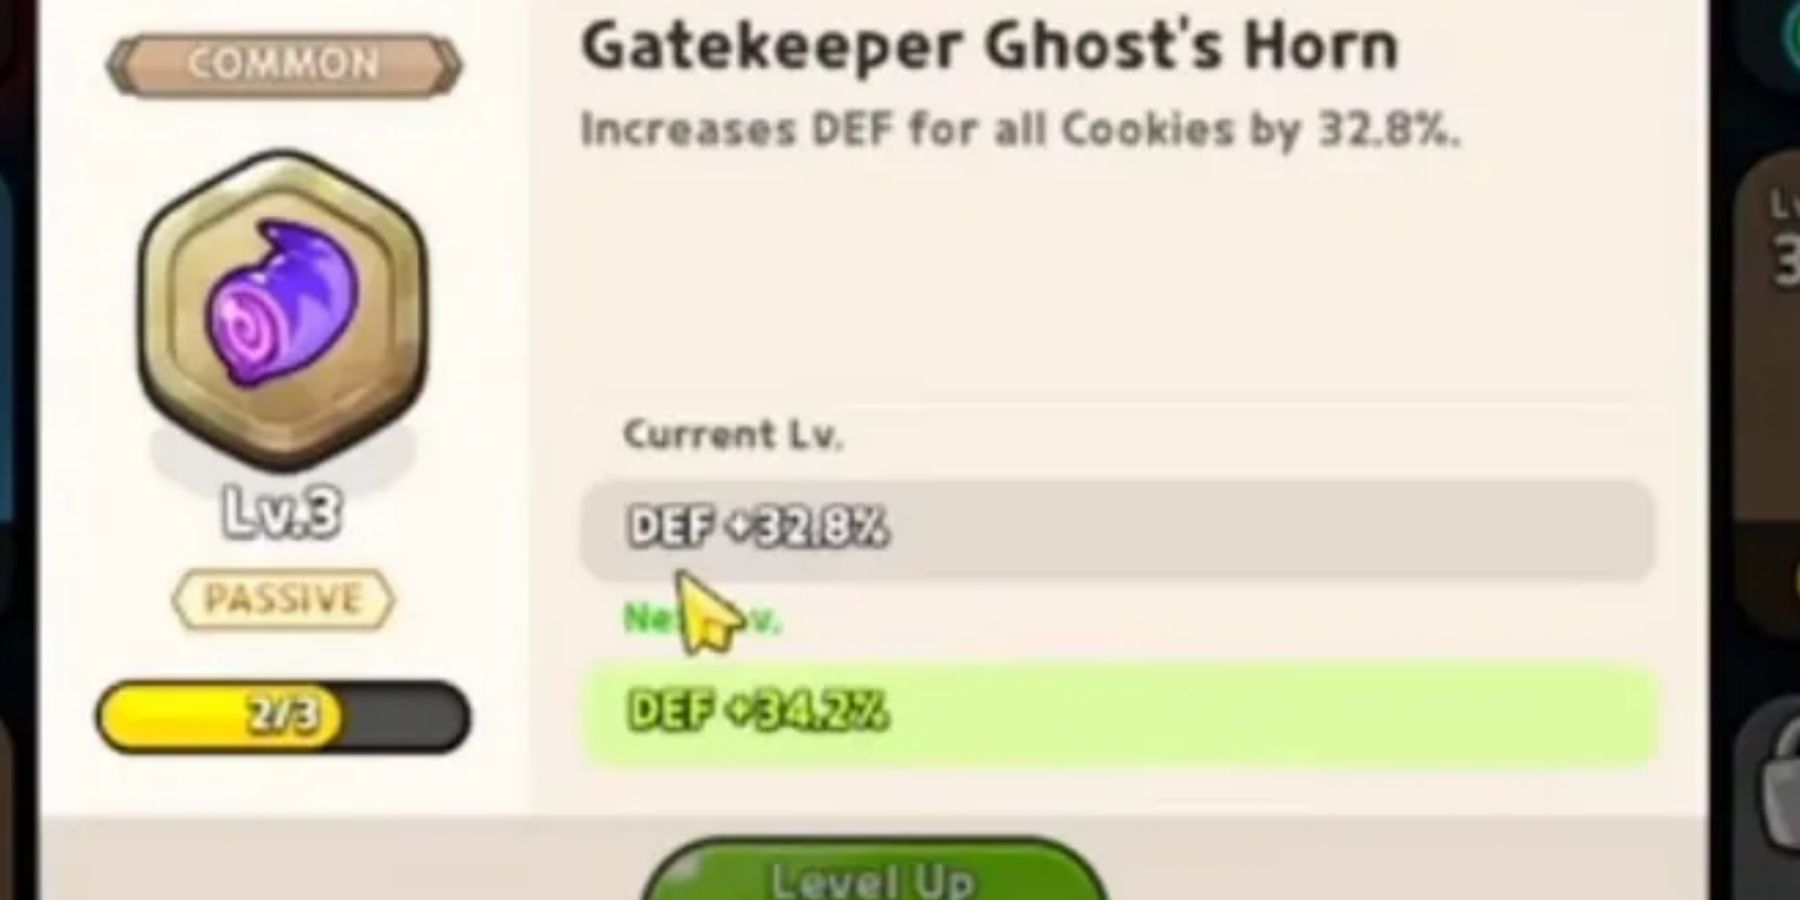 gakekeeper-ghosts-horn-treasure-stats-1